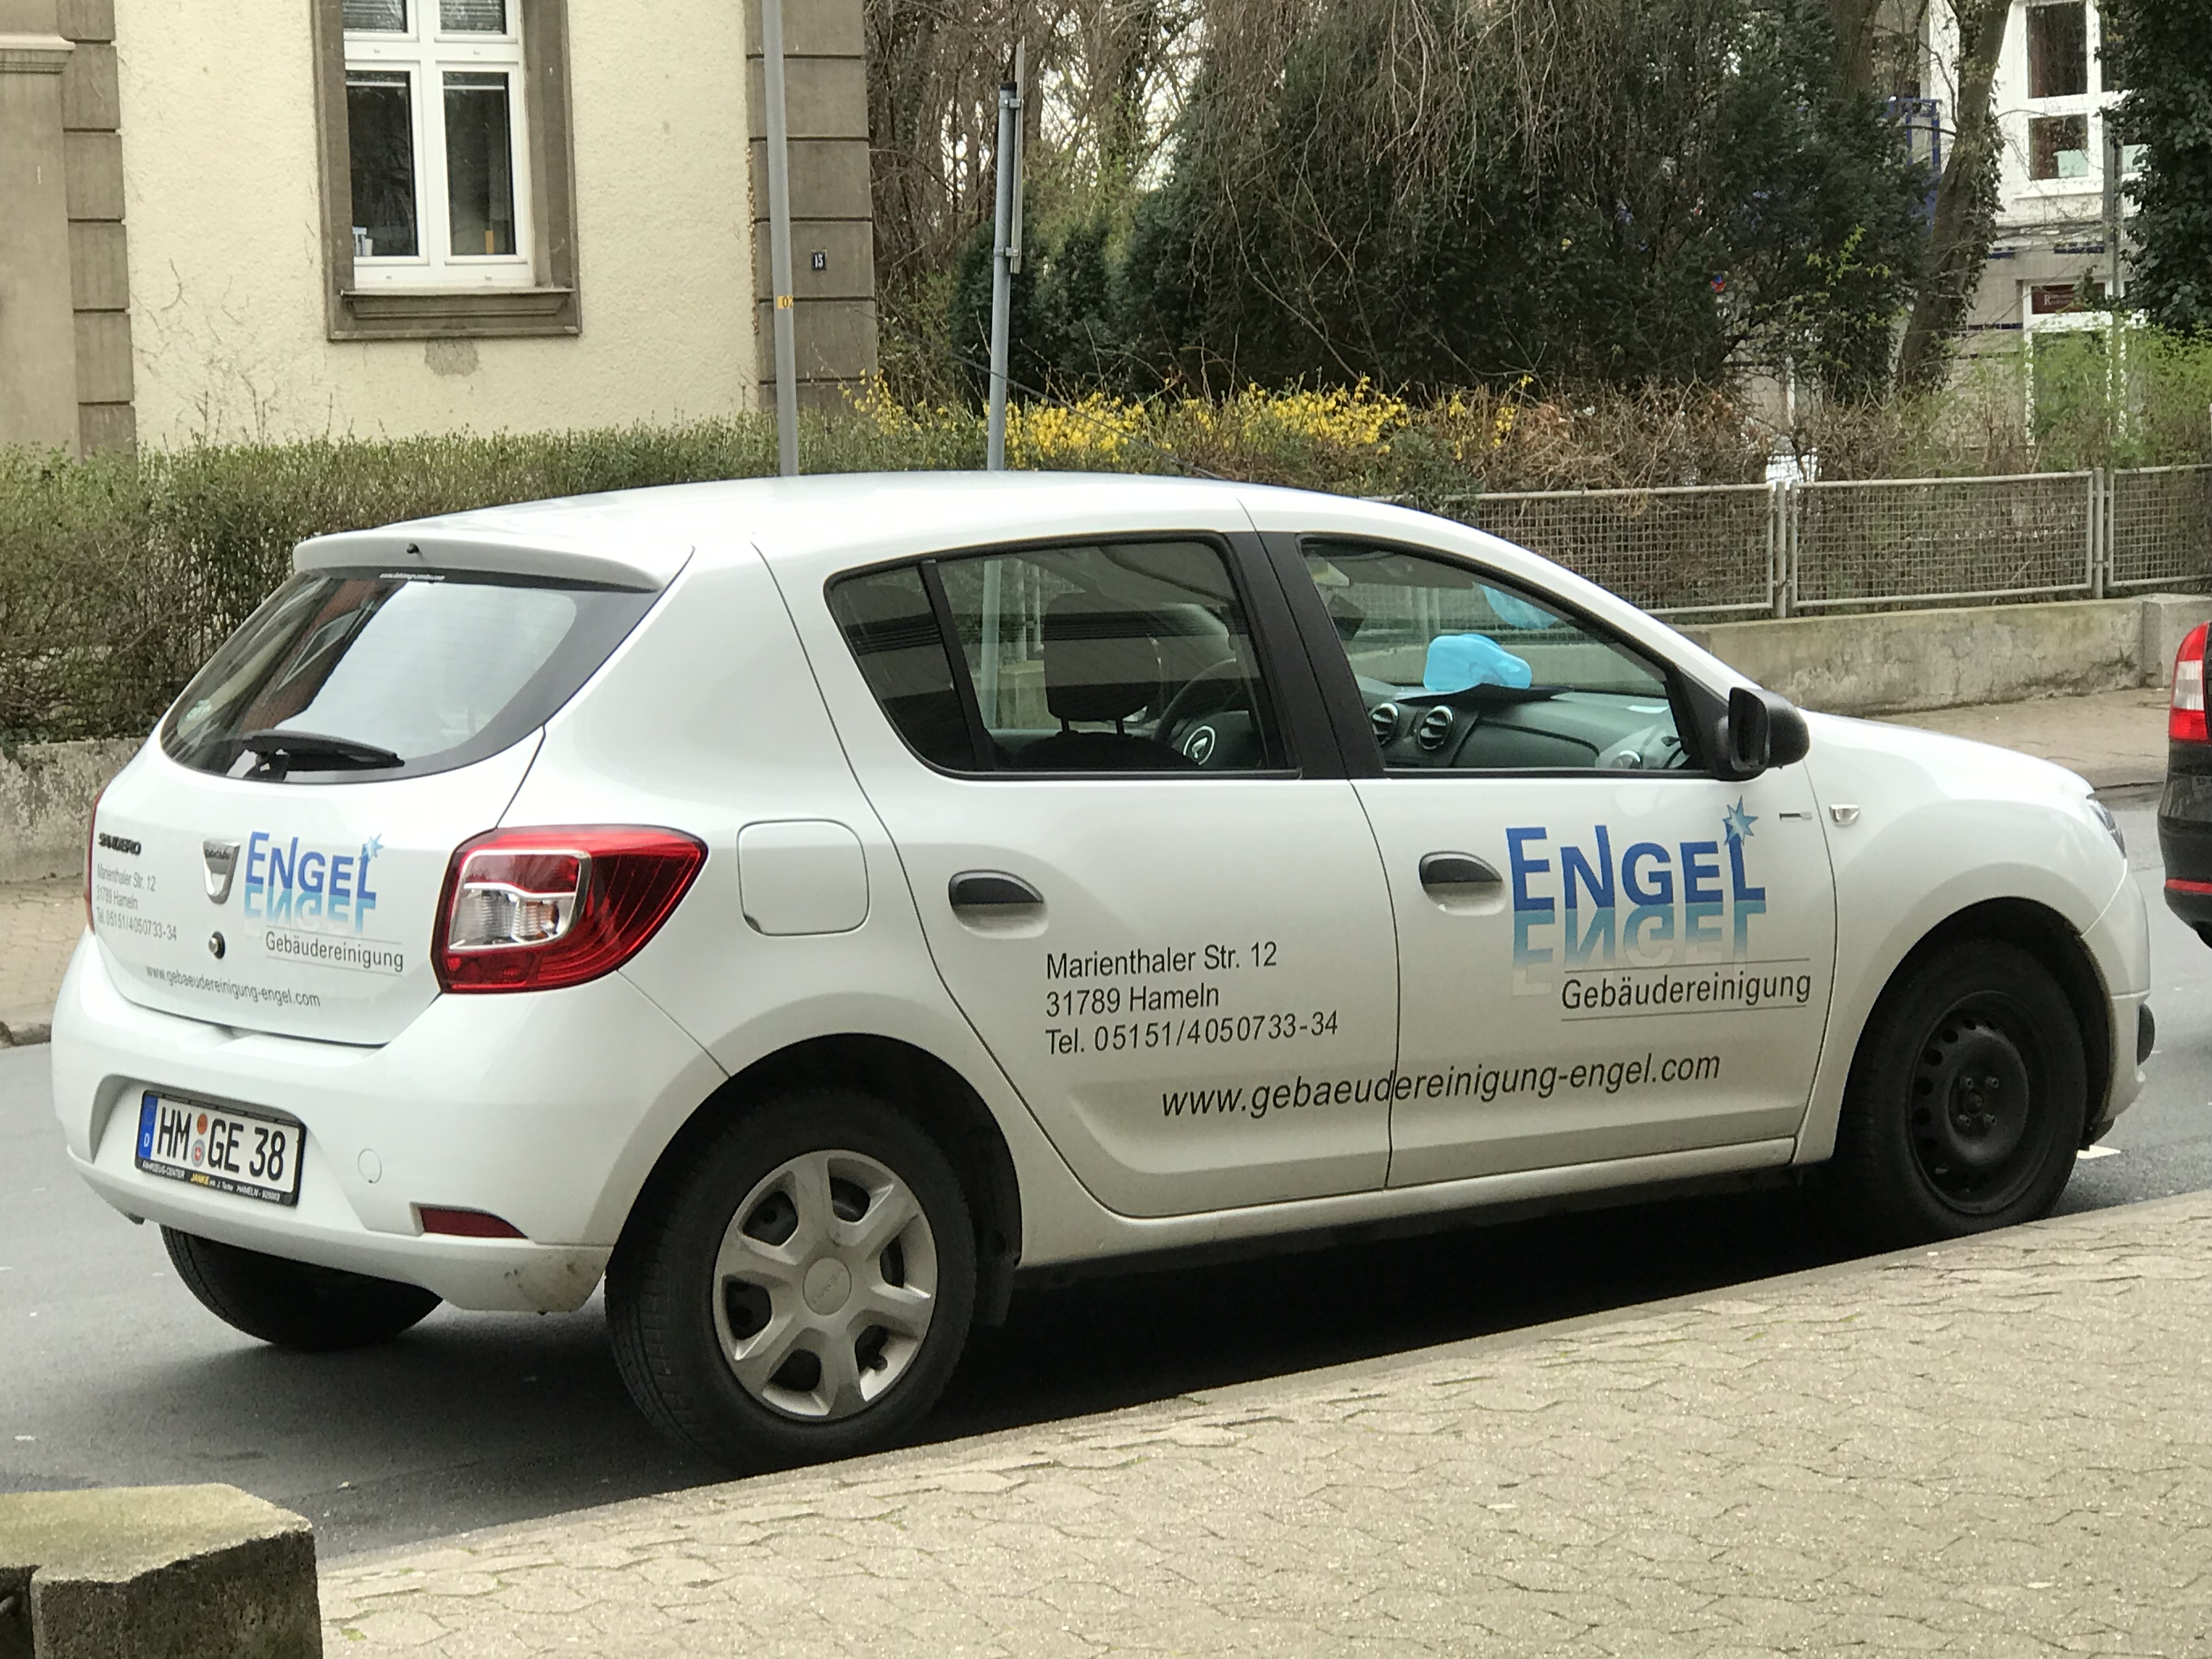 Bild 2 Gebäudereinigung Engel GmbH in Hameln